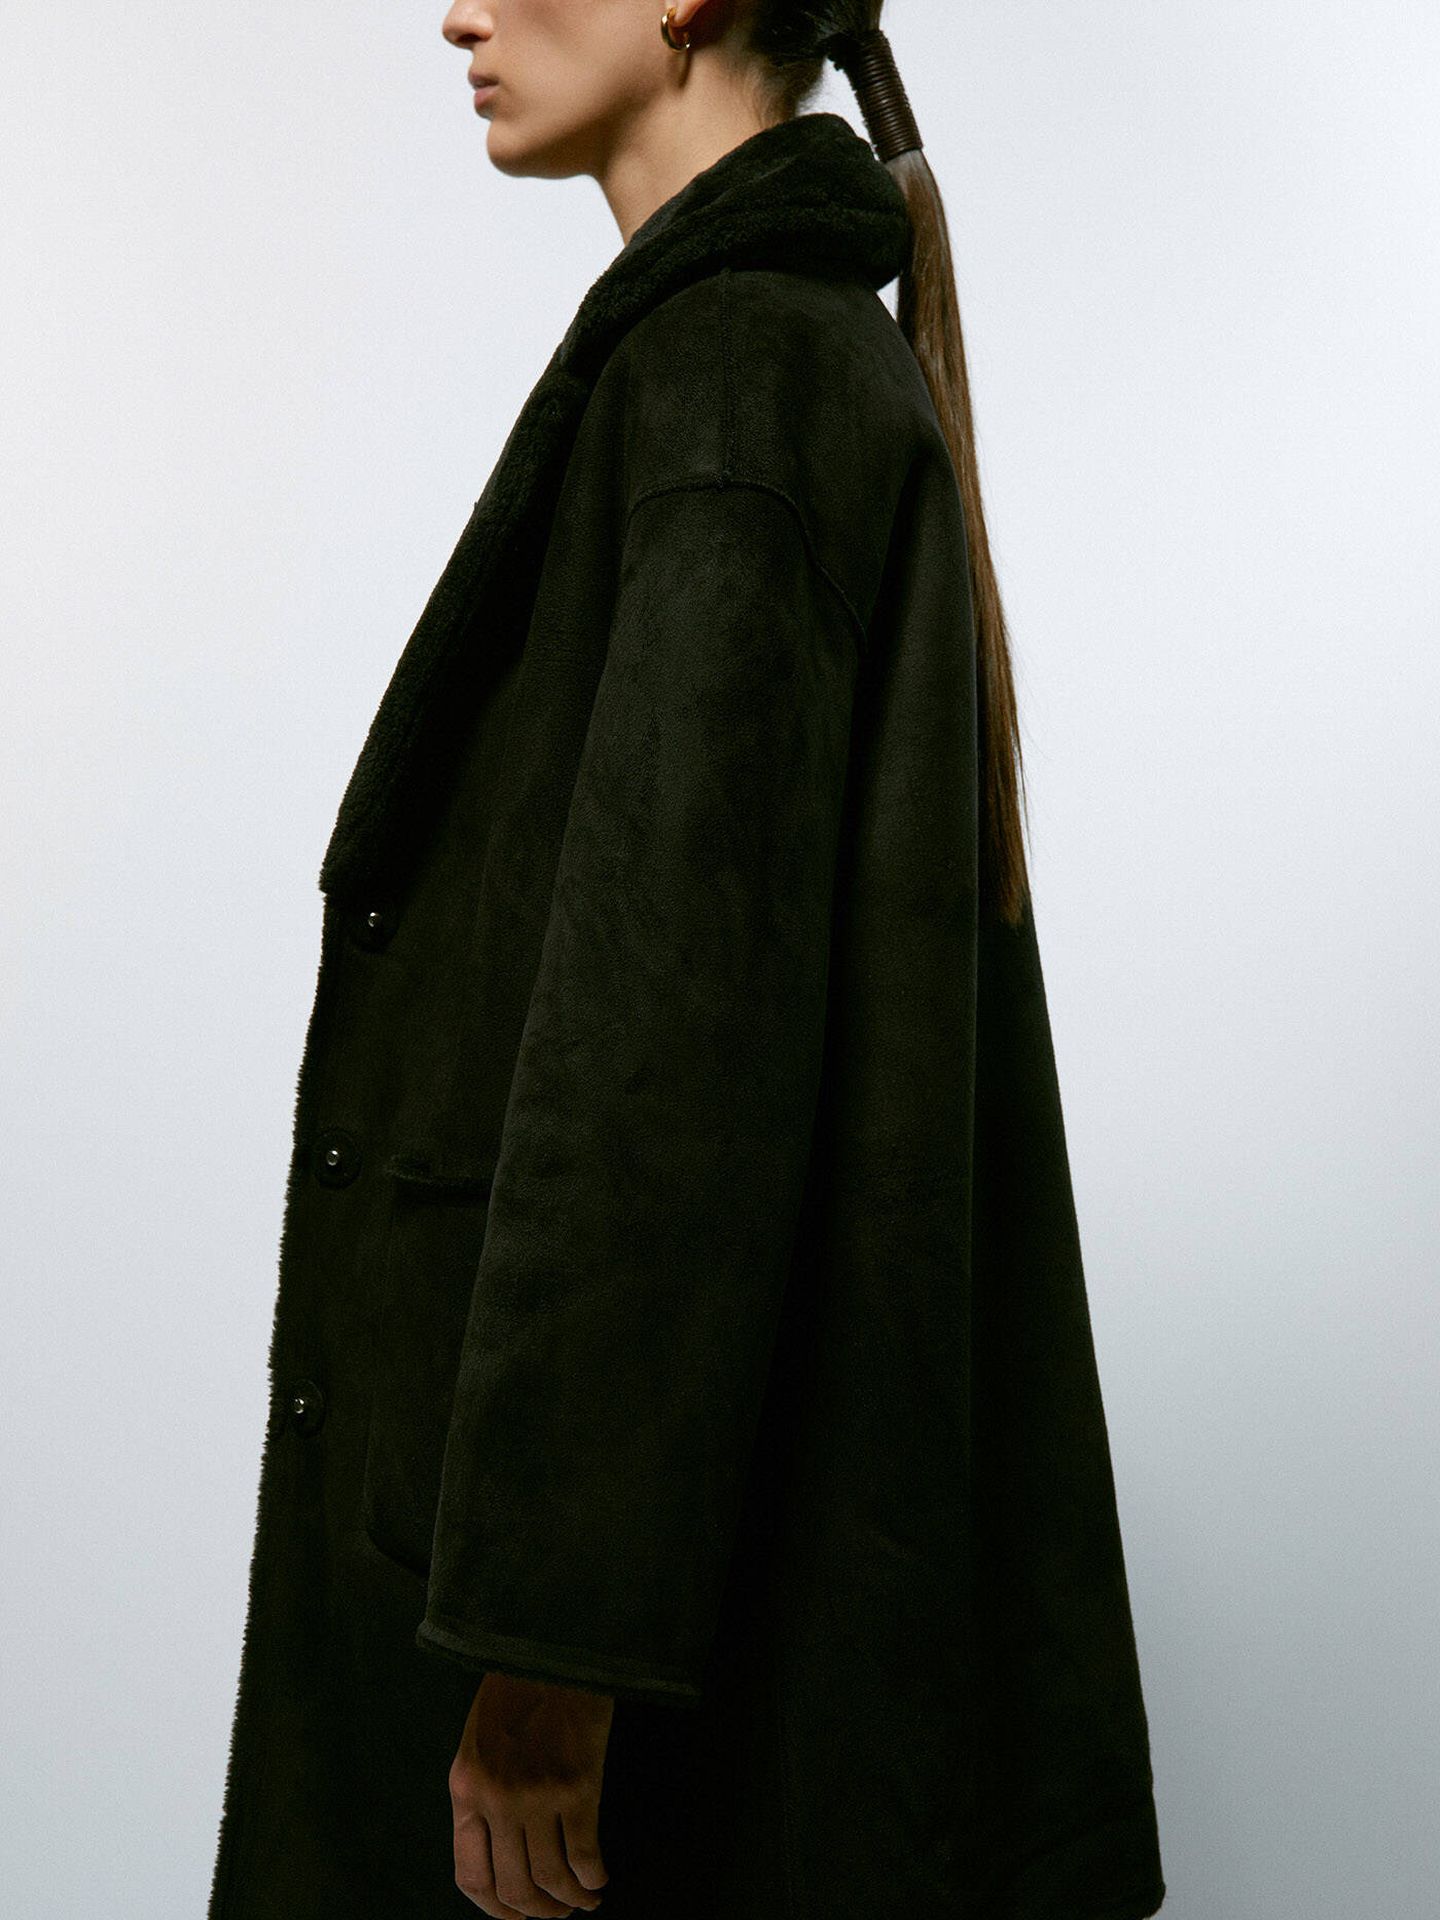 El abrigo negro de Sfera. (Cortesía)